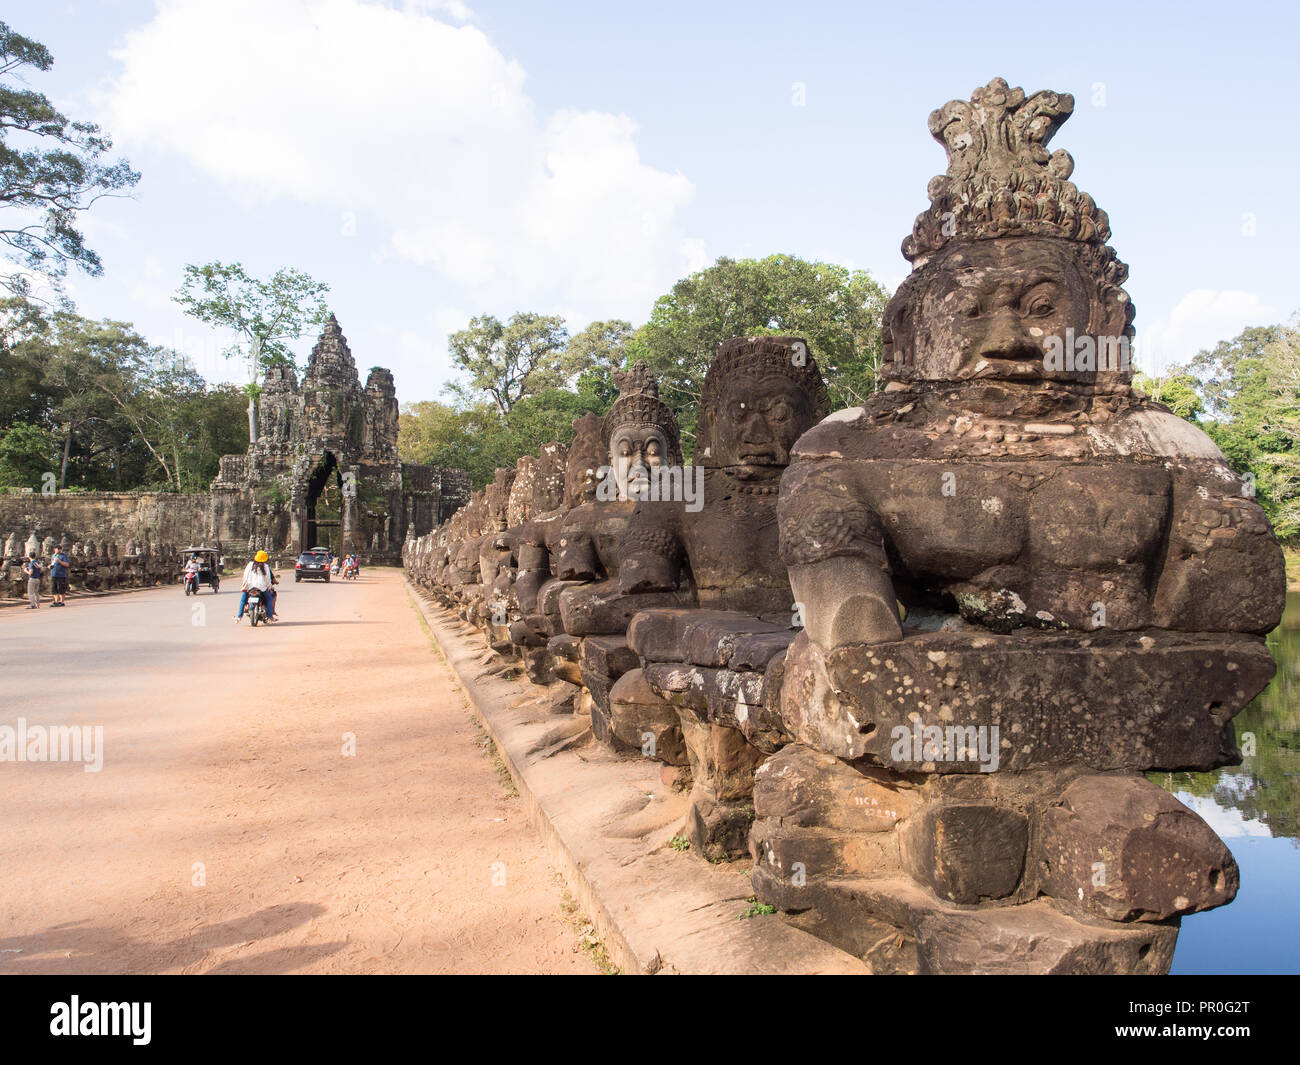 Pont sur les douves d'Angkor Thom, Angkor Wat complexe, UNESCO World Heritage Site, près de Siem Reap, Cambodge, Indochine, Asie du Sud-Est, l'Asie Banque D'Images